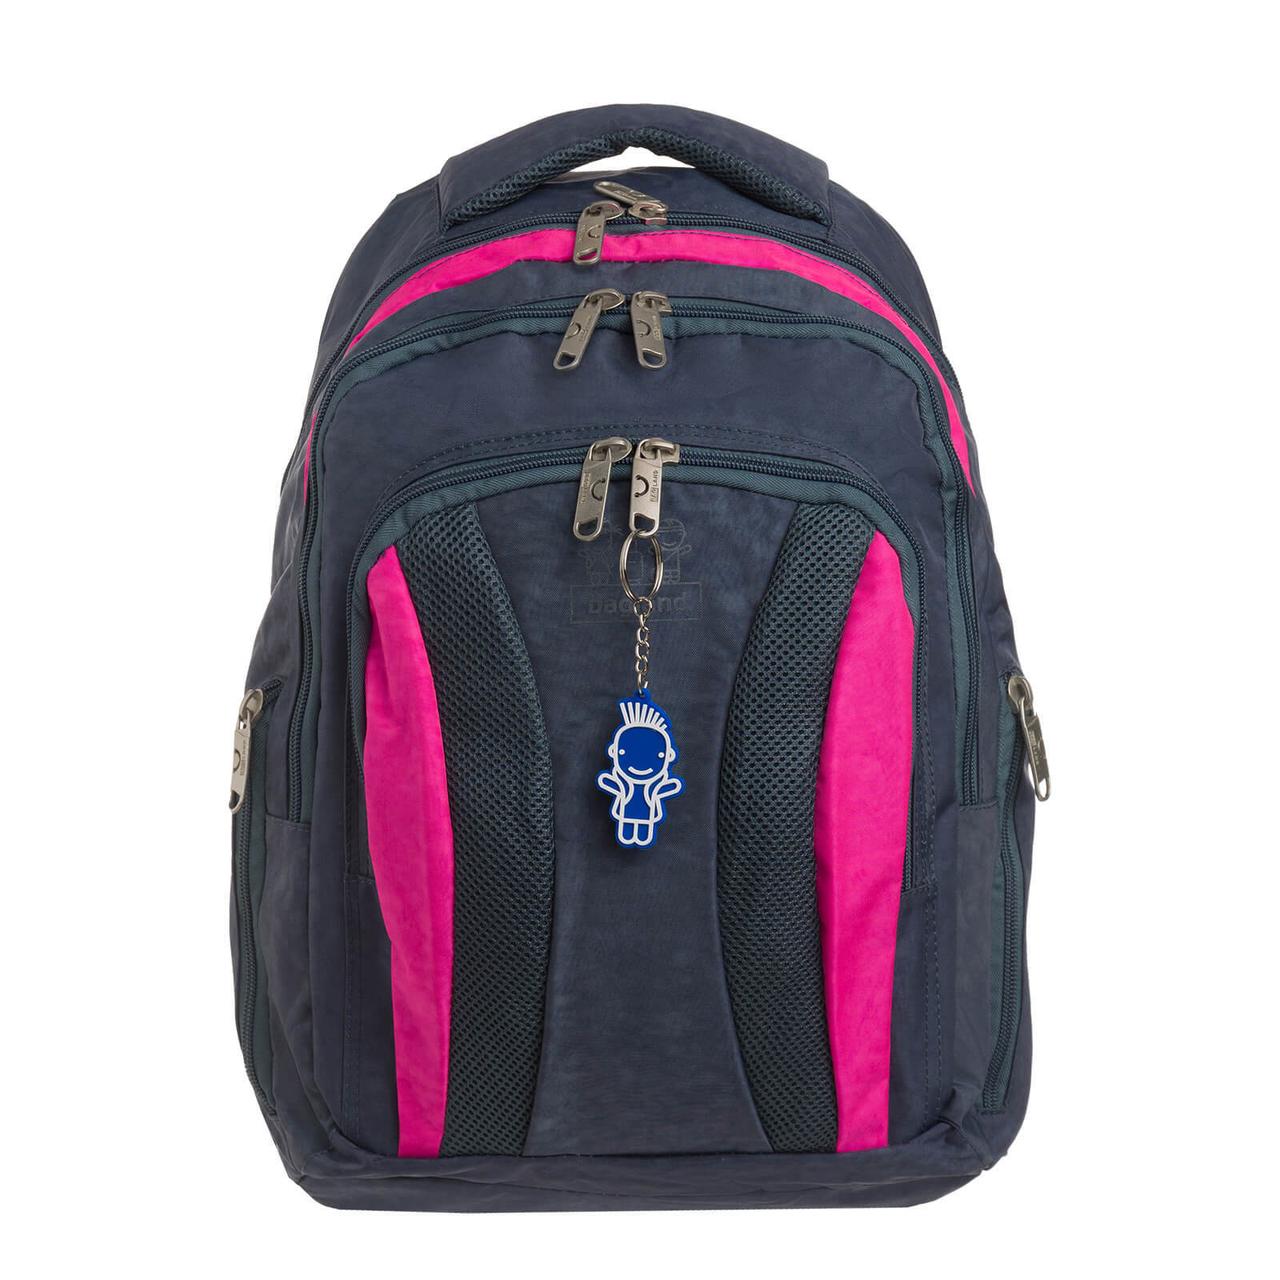 Шкільний рюкзак для дівчаток з ортопедичною спинкою на 3 відділення Bagland Драйв 29 л сірий/рожевий (0018970)